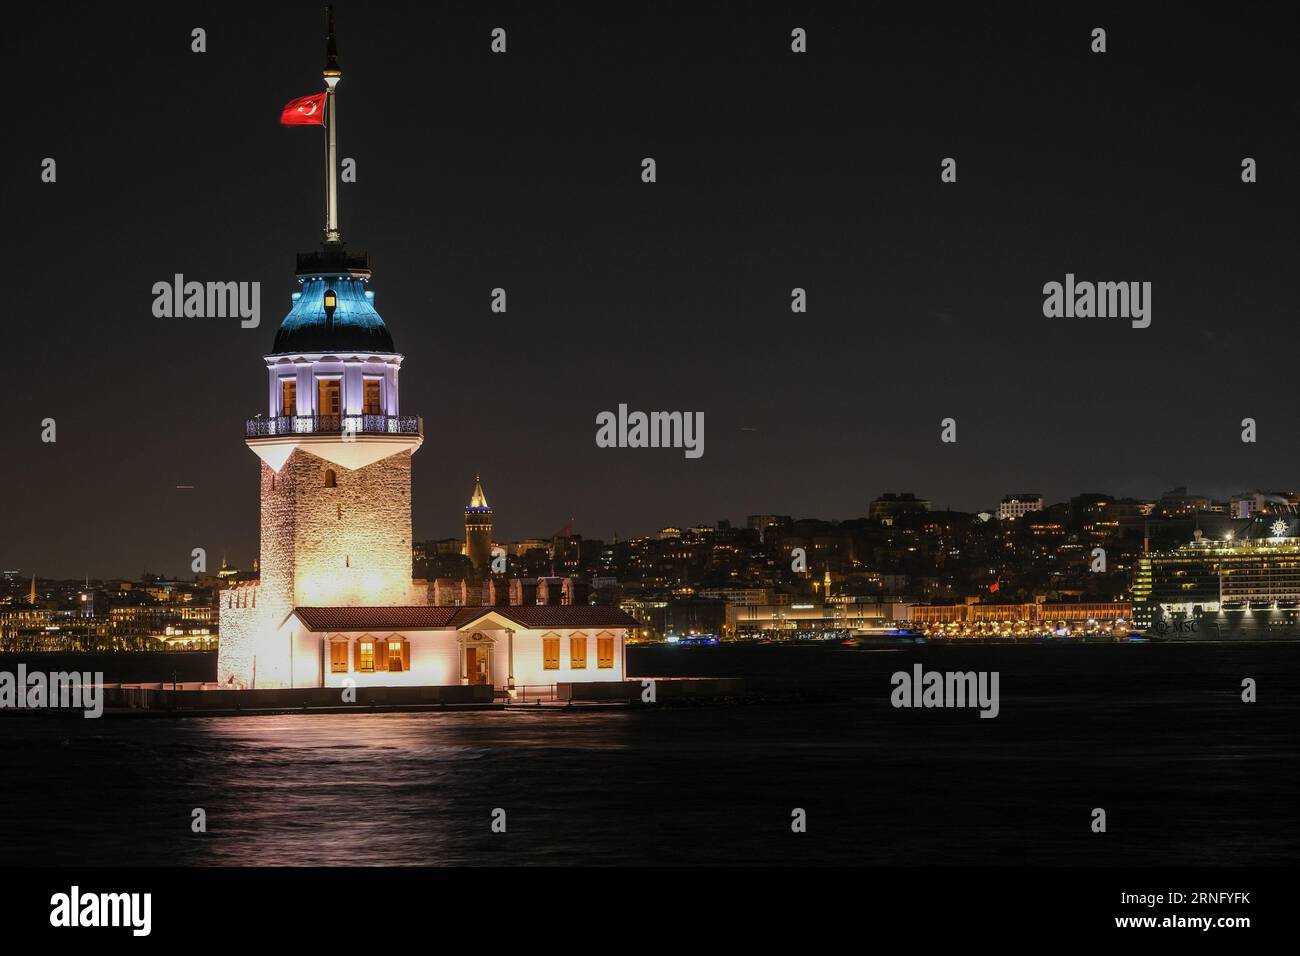 Mädchenturm oder Kız Kulesi Nachtsicht mit Langzeitbelichtung. Der Mädchenturm ist eines der berühmten historischen Gebäude Istanbuls am Bosporus. Stockfoto